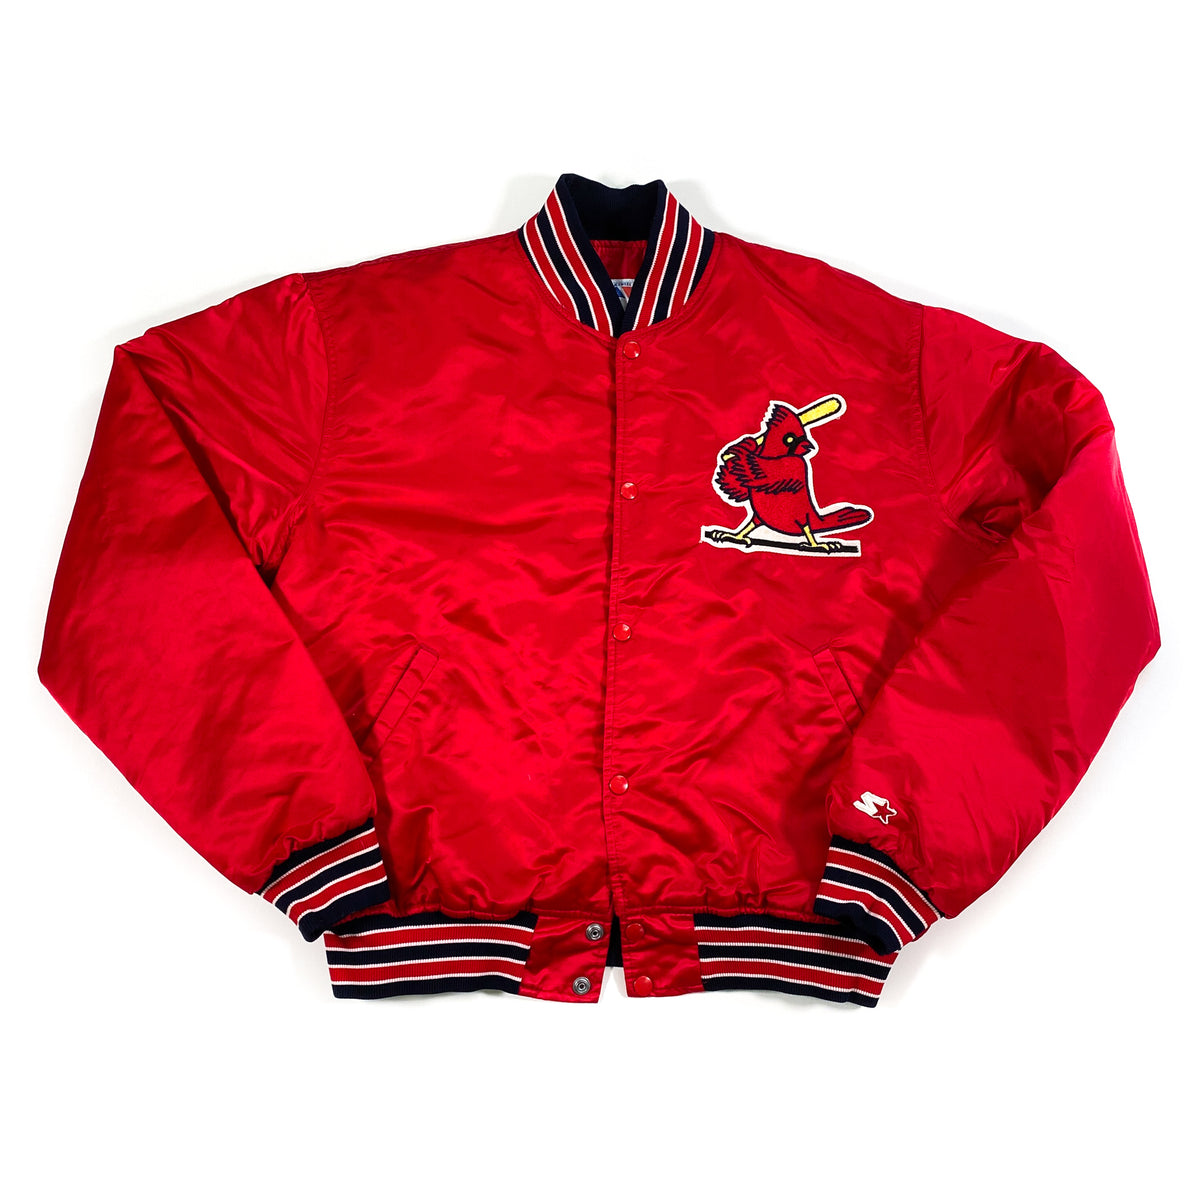 Vintage 1997 St. Louis Cardinals Long Sleeve Starter T-Shirt